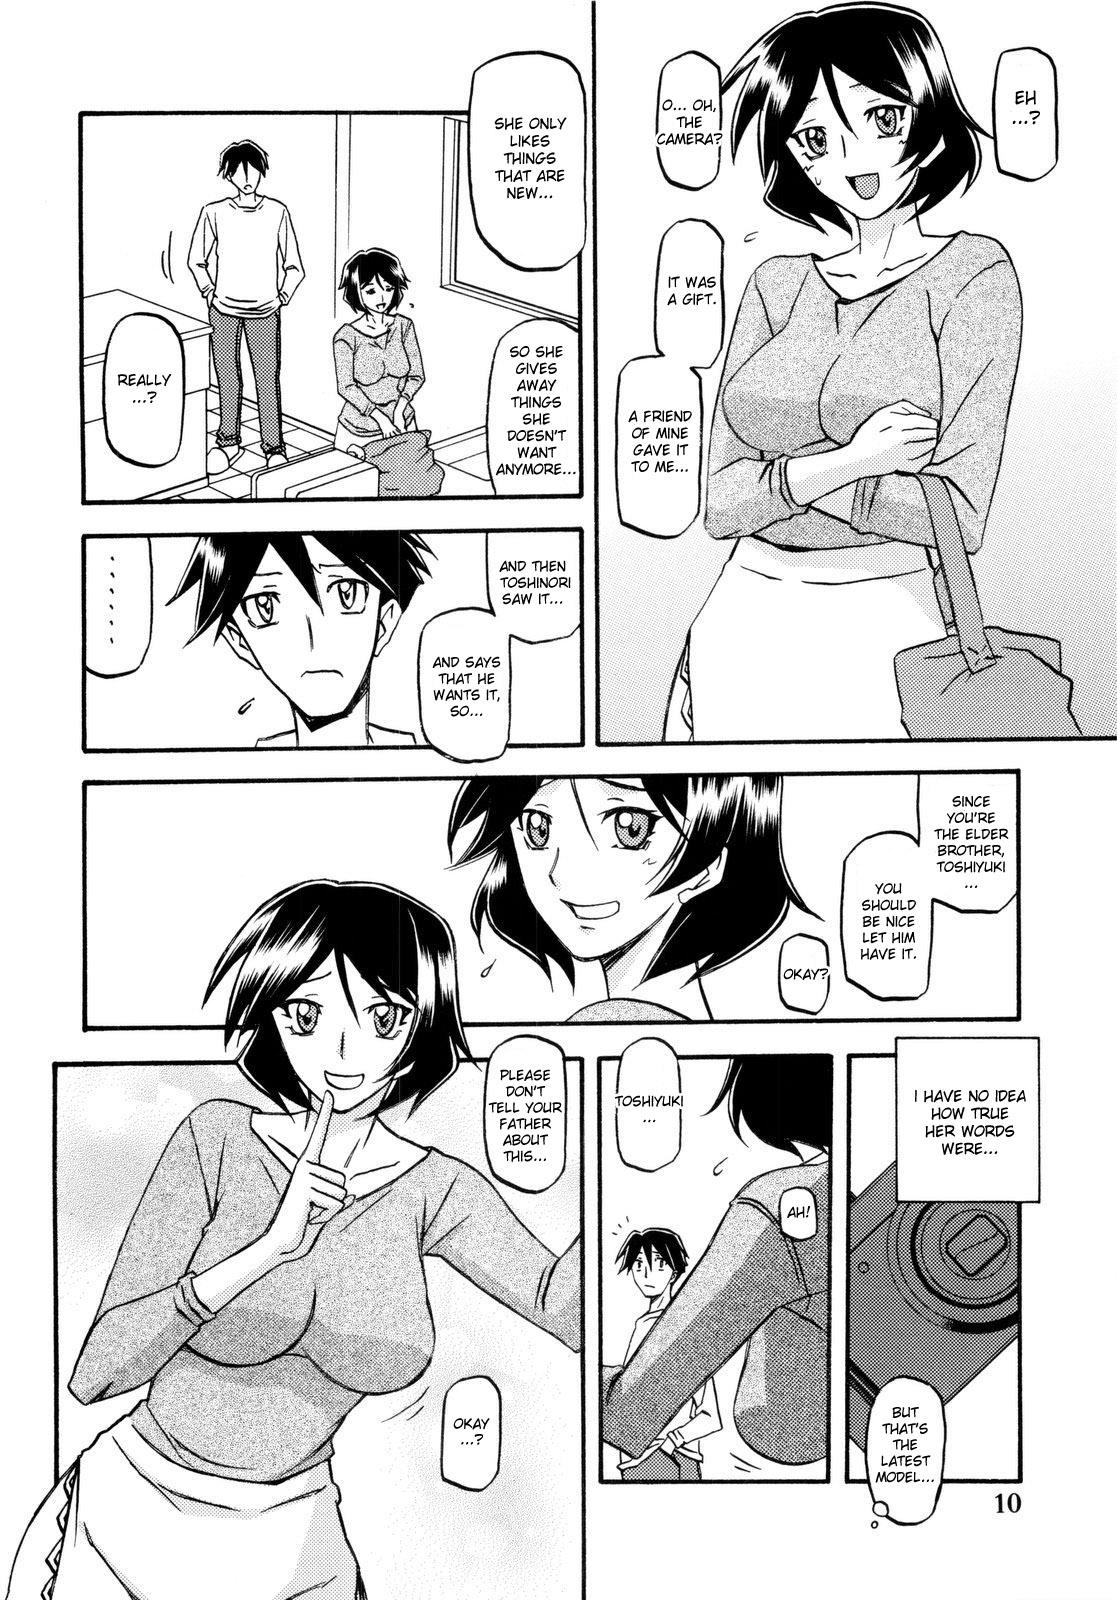 Gay Dudes Akebi no Mi - Fumiko - Akebi no mi Shorts - Page 10